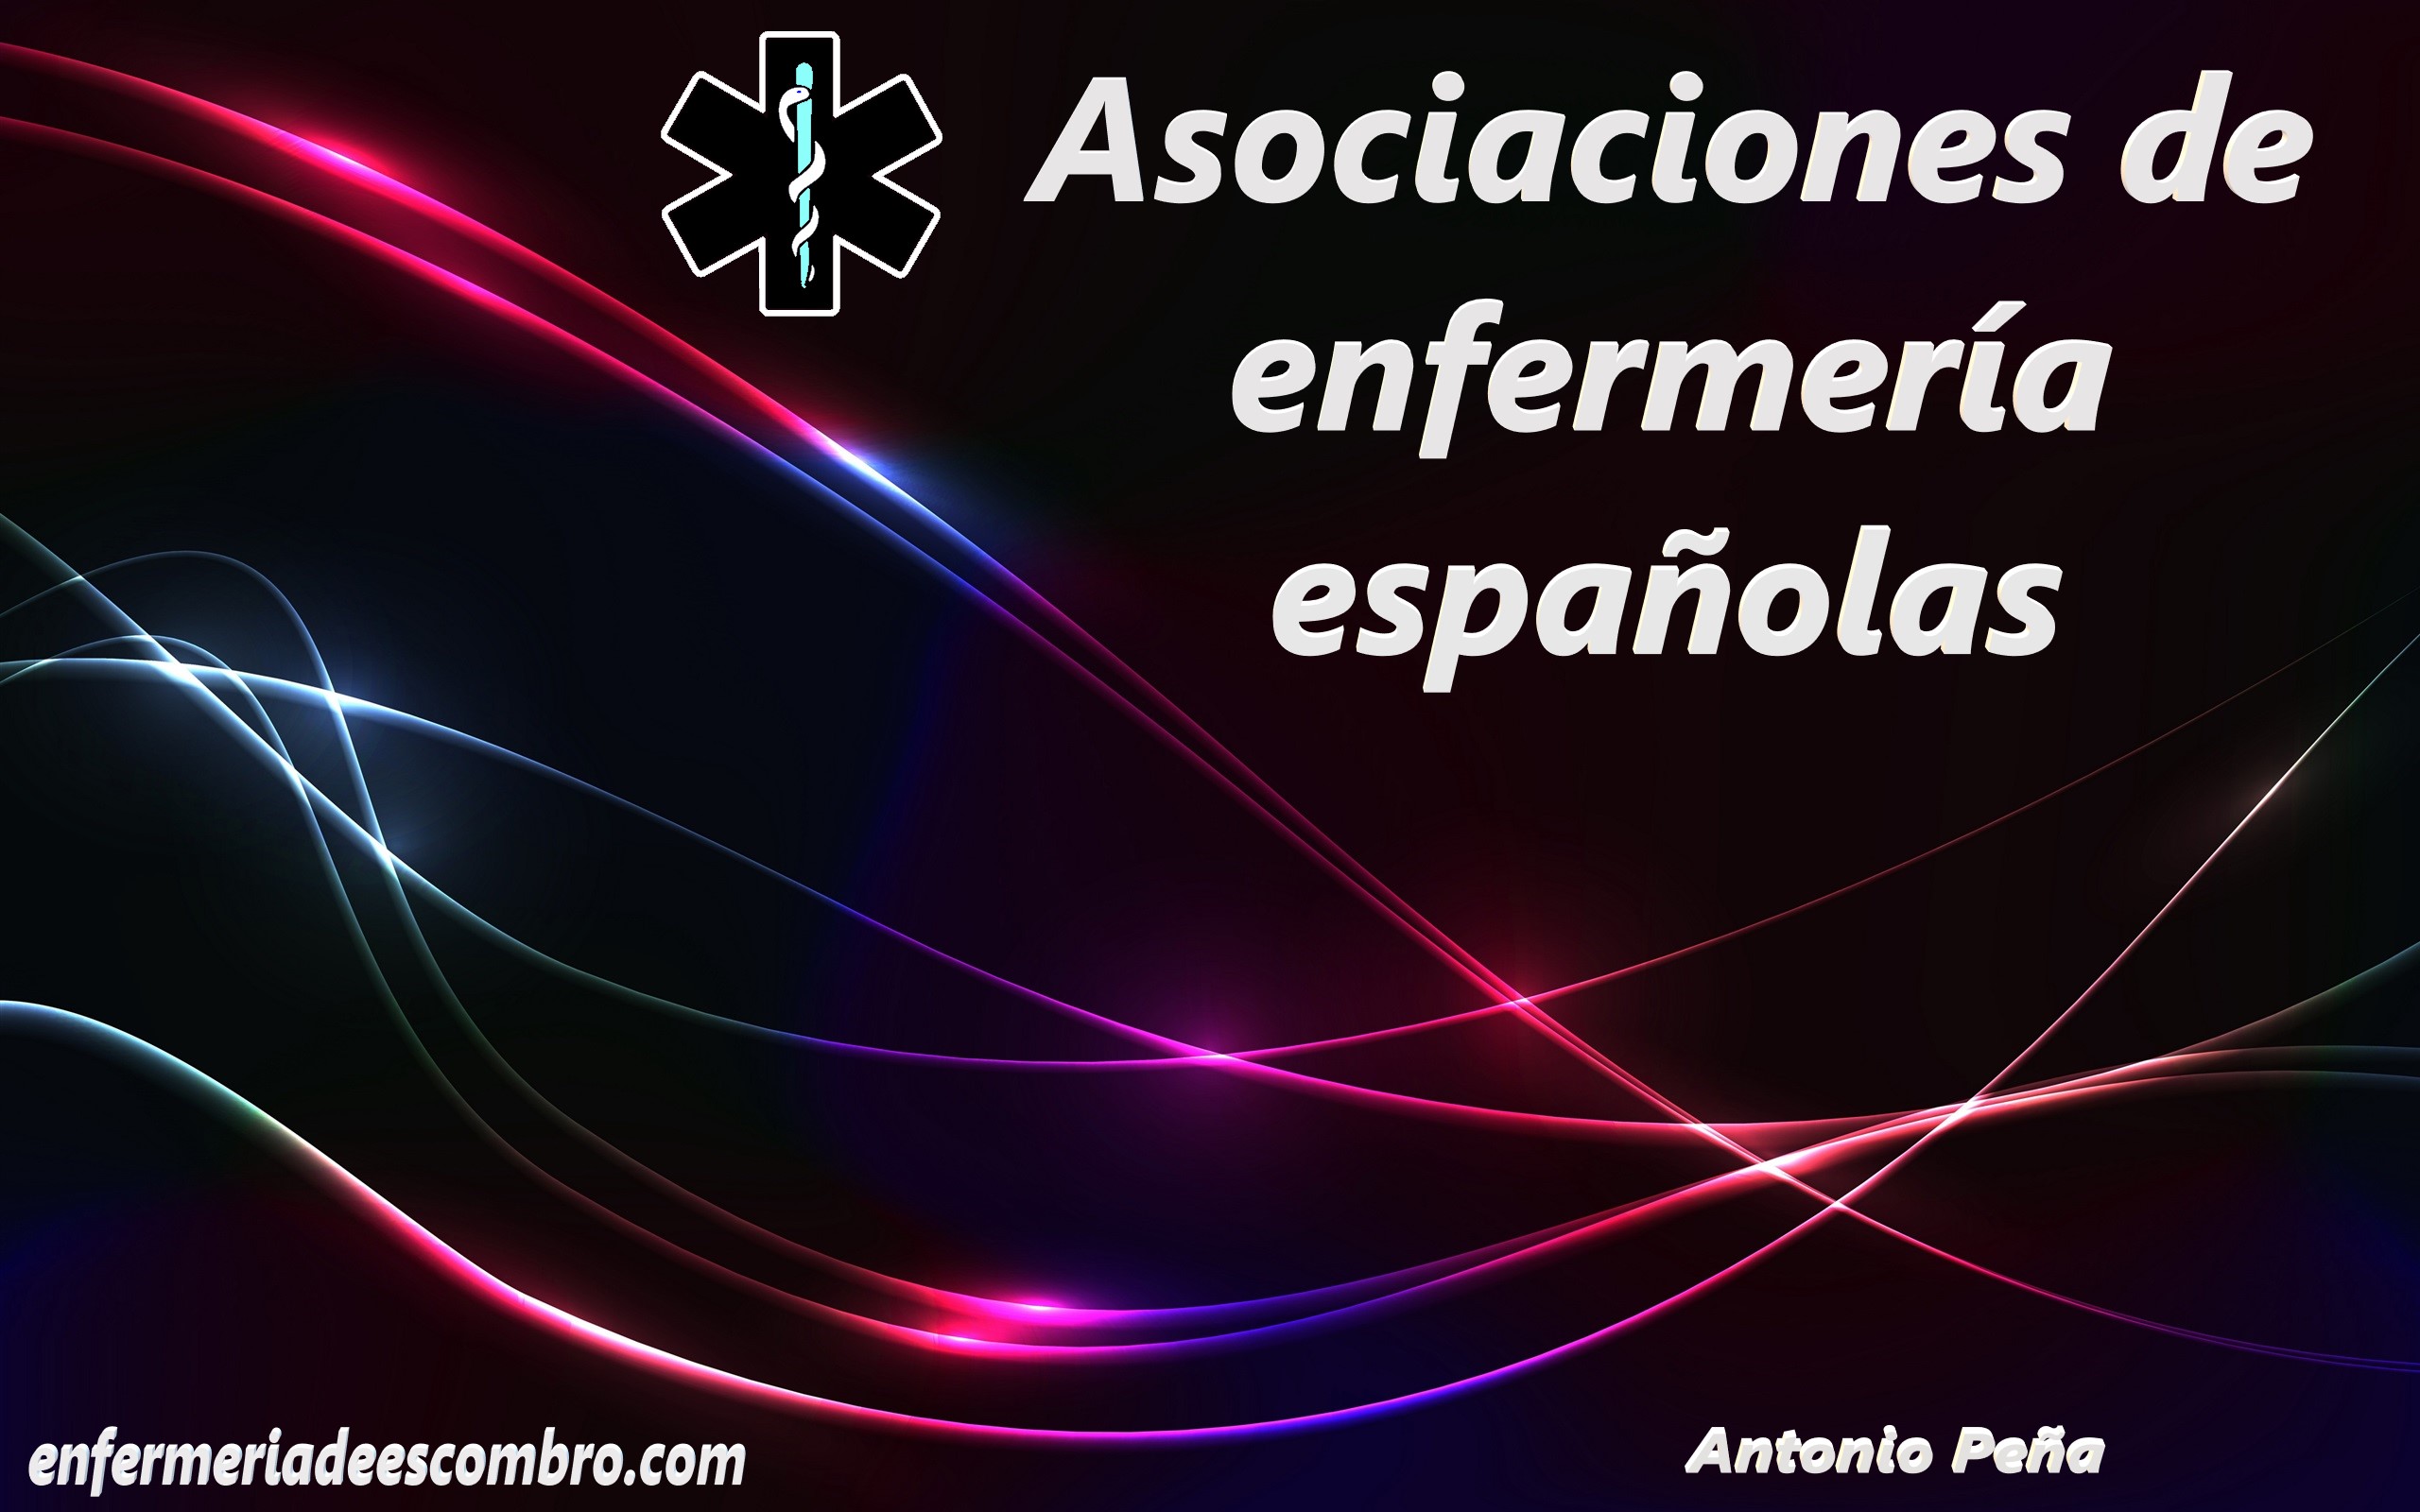 Asociaciones de enfermería españolas
Spanish nursing associations